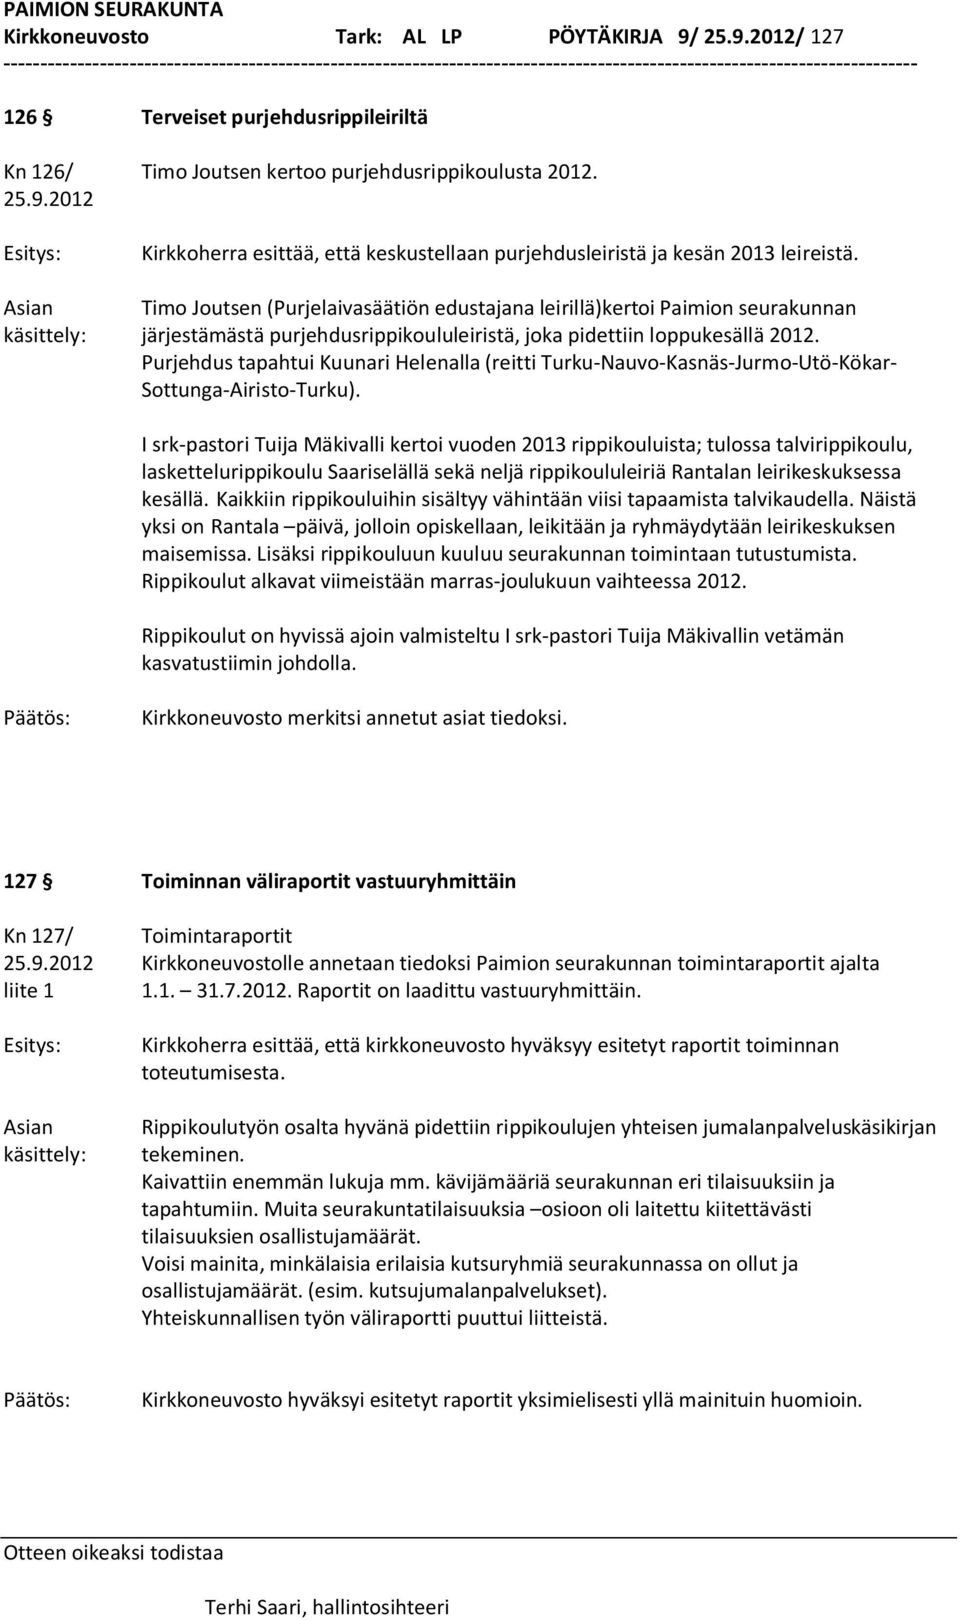 Purjehdus tapahtui Kuunari Helenalla (reitti Turku-Nauvo-Kasnäs-Jurmo-Utö-Kökar- Sottunga-Airisto-Turku).